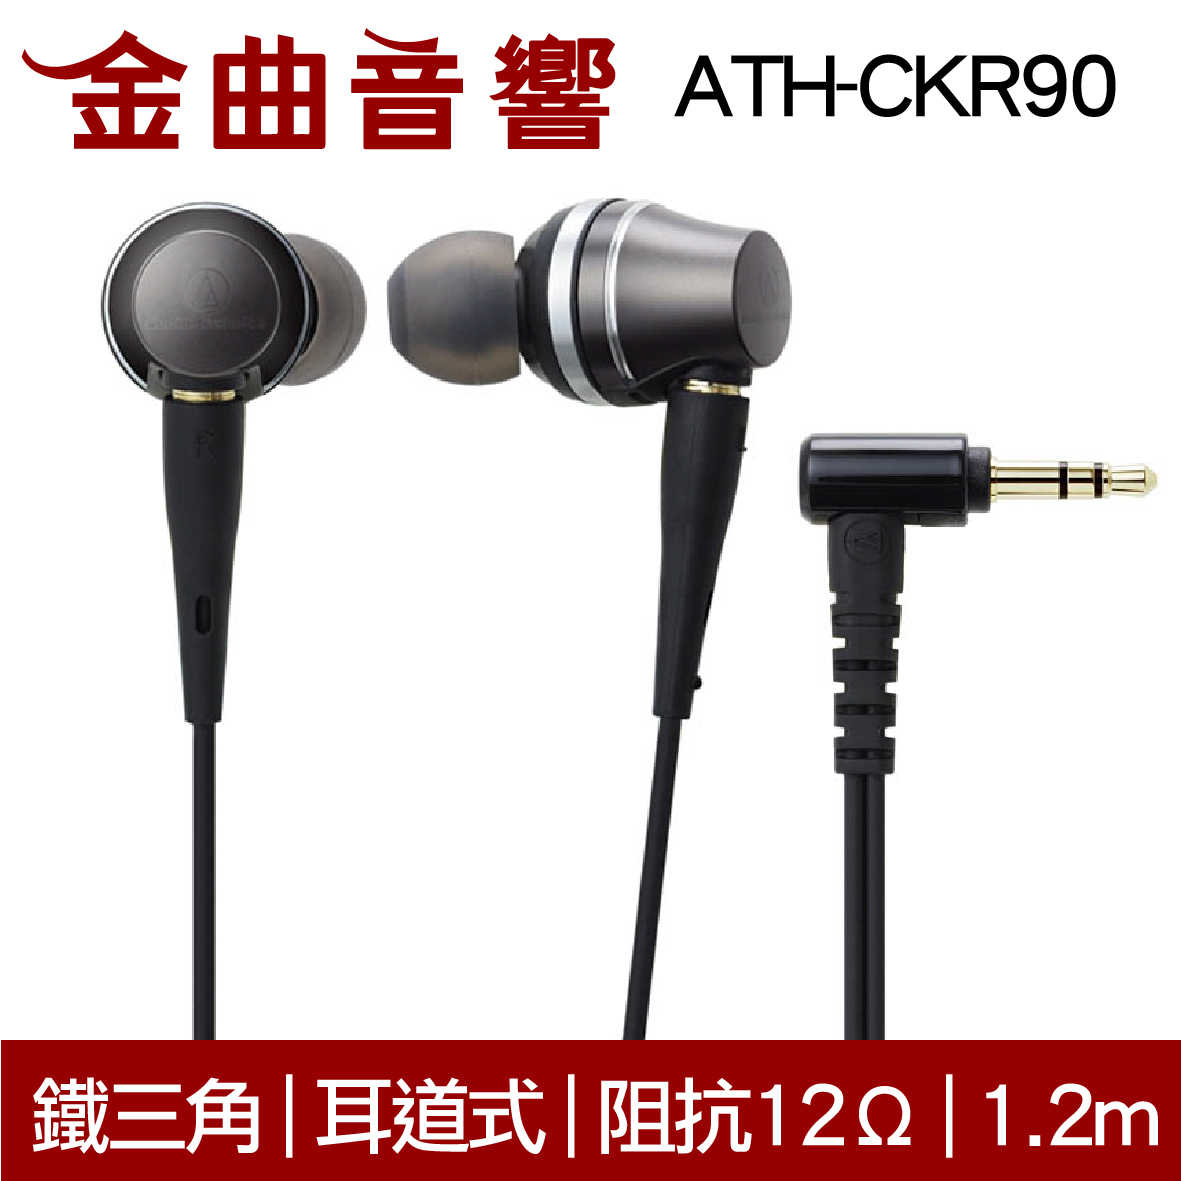 鐵三角 ATH-CKR90 耳道式耳機 | 金曲音響